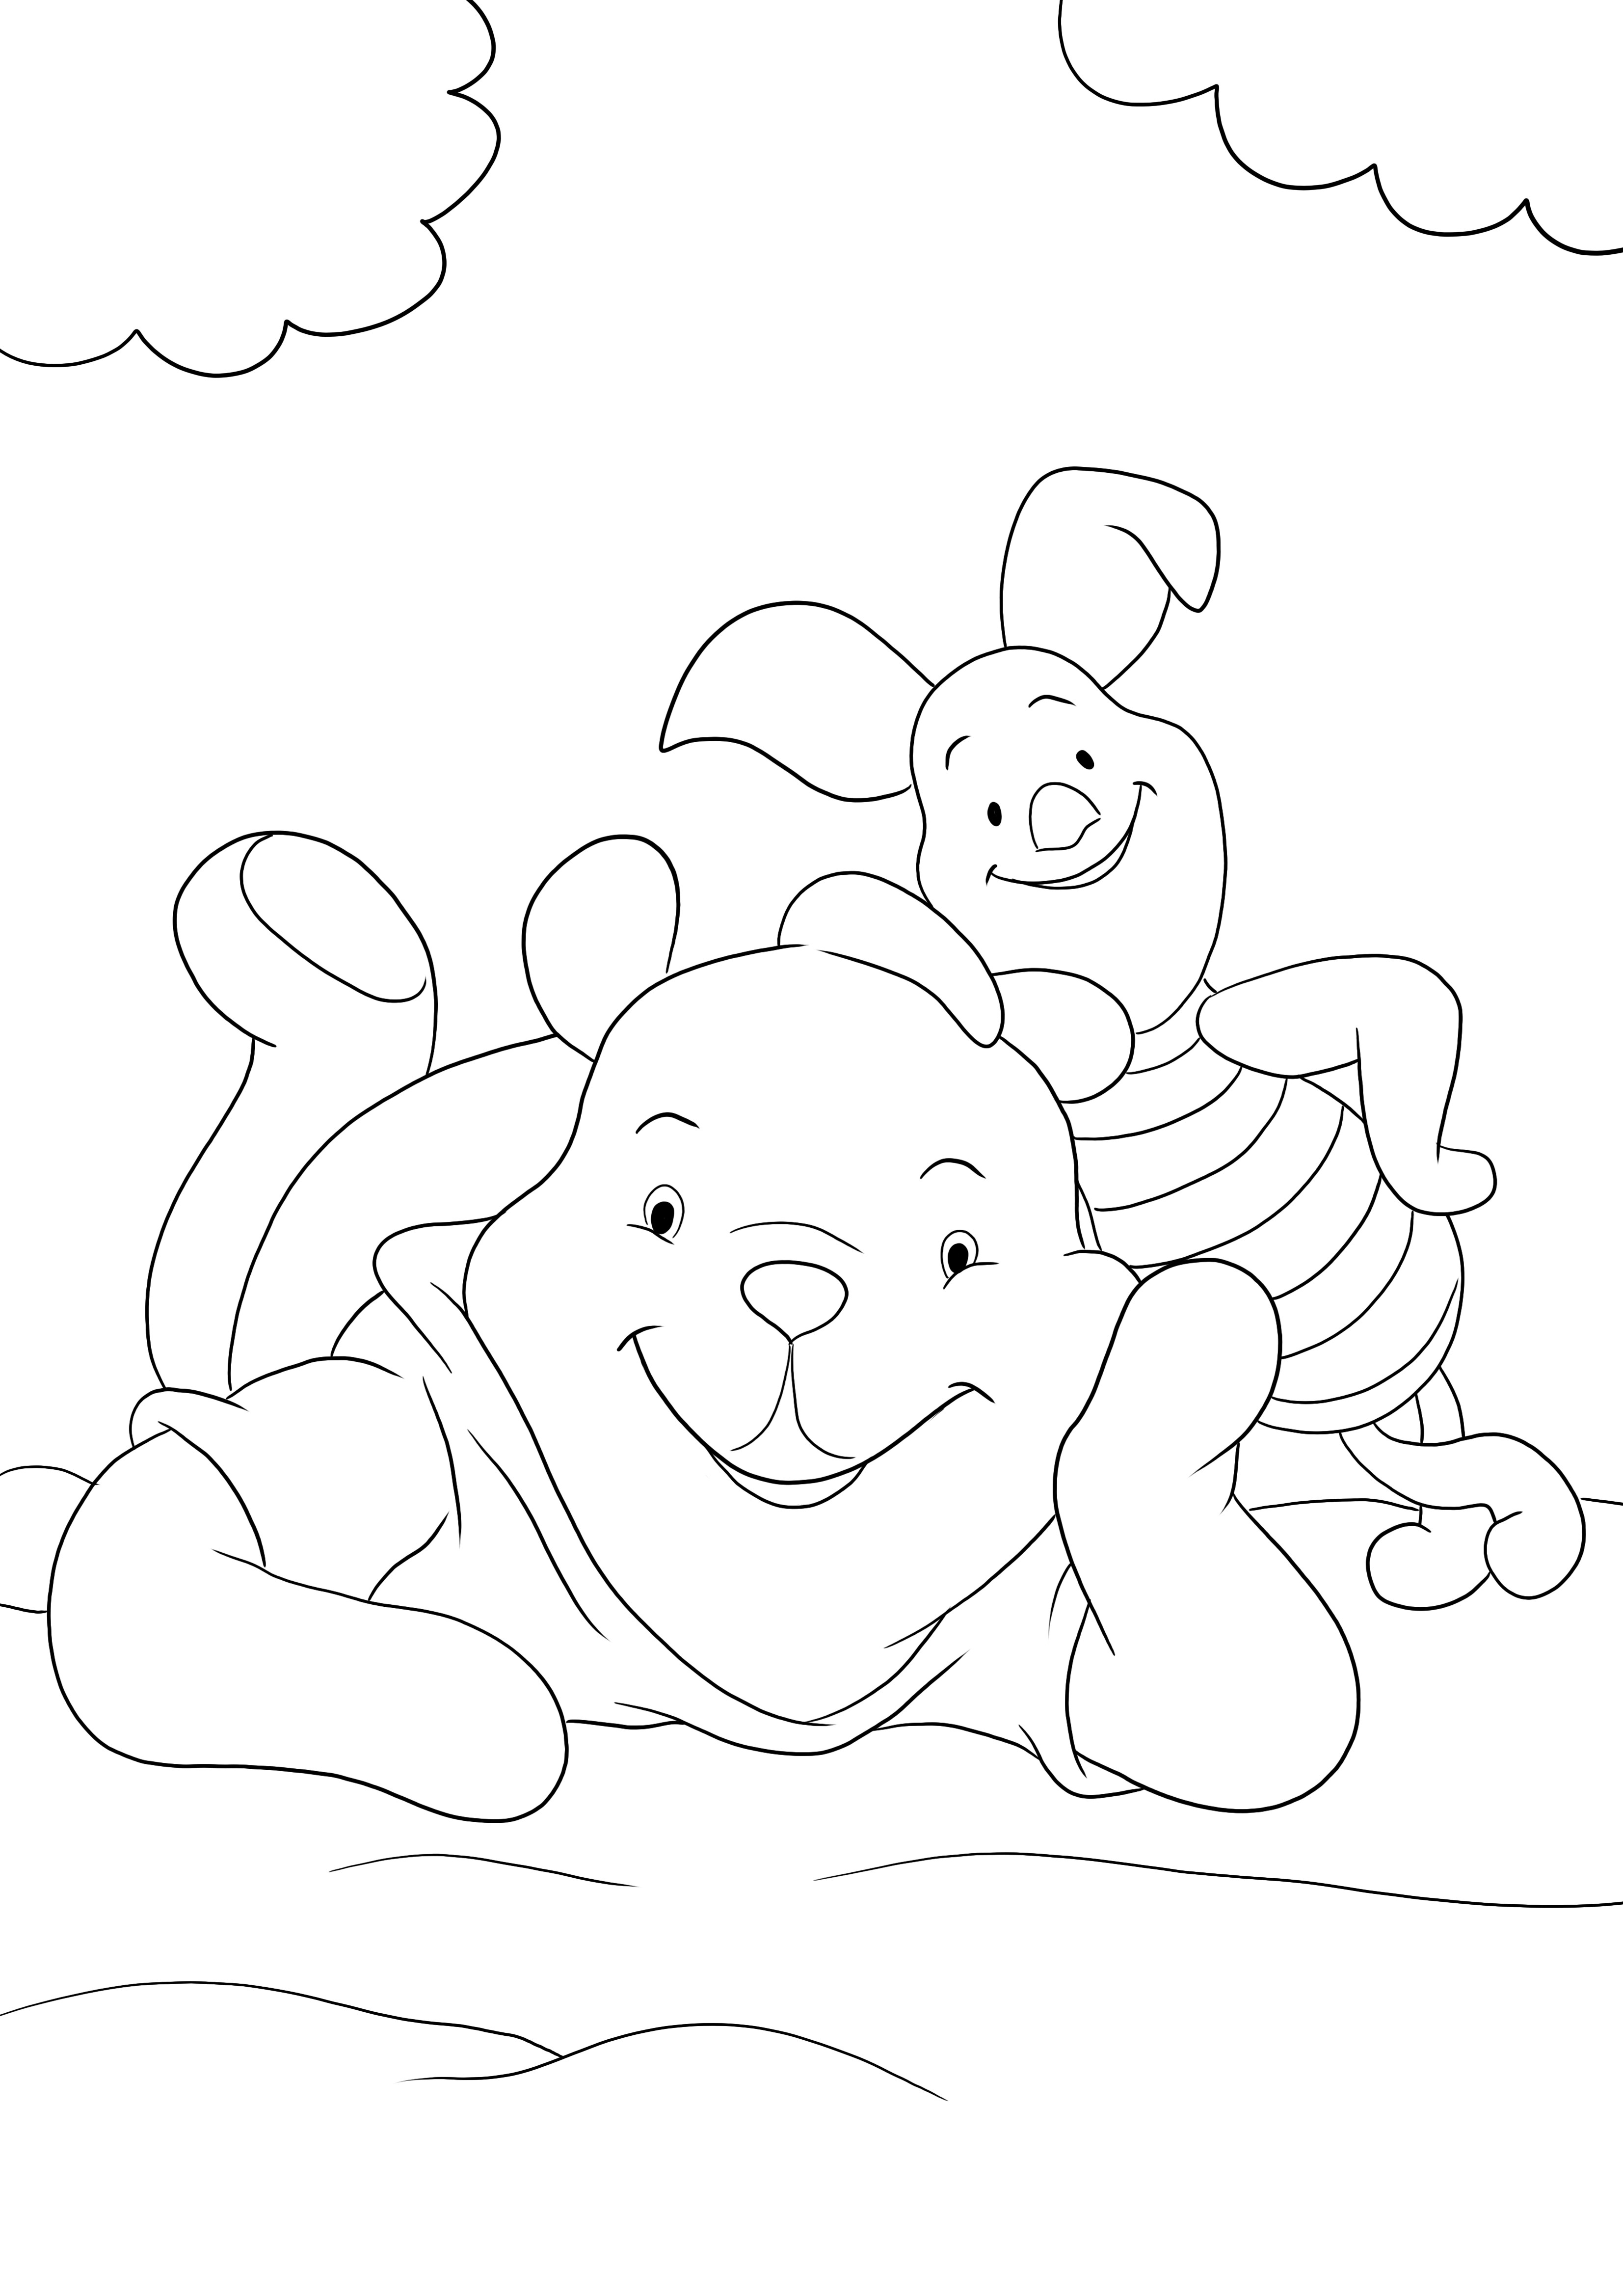 Winnie e il suo migliore amico Pimpi immagini da colorare e stampare gratis per i bambini da colorare